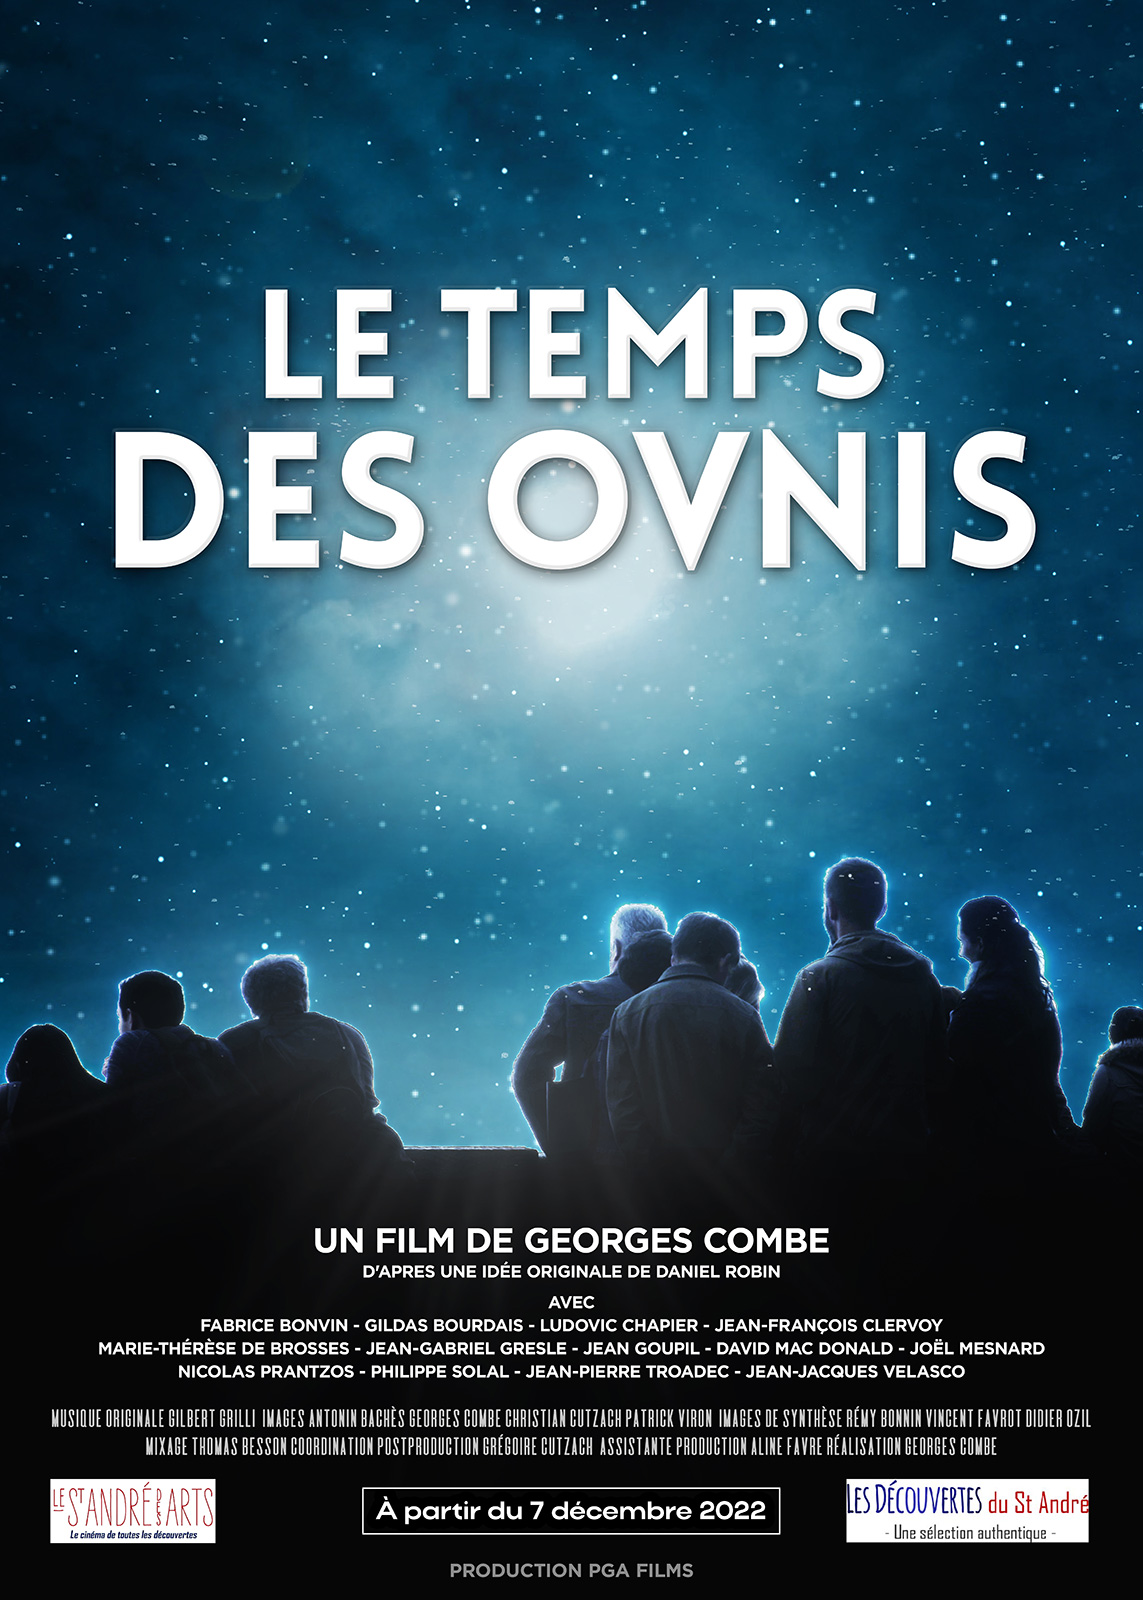 Le Temps des OVNIS - Réalisateur GEORGES COMBE, Georges Combes